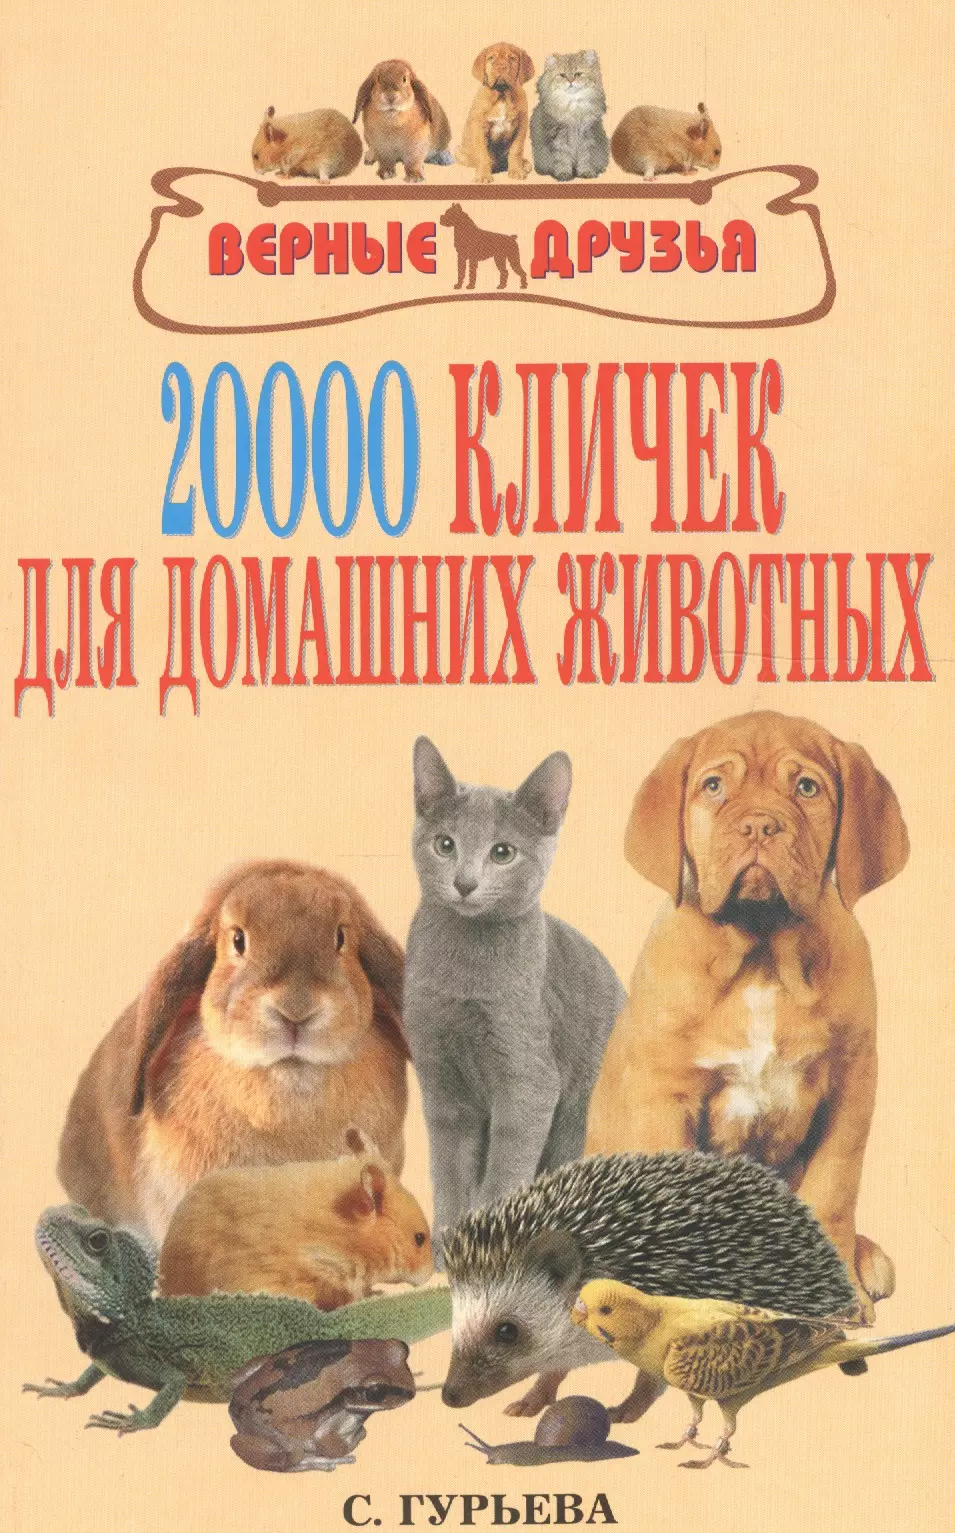 Гурьева Светлана Юрьевна 20000 кличек для домашних животных.